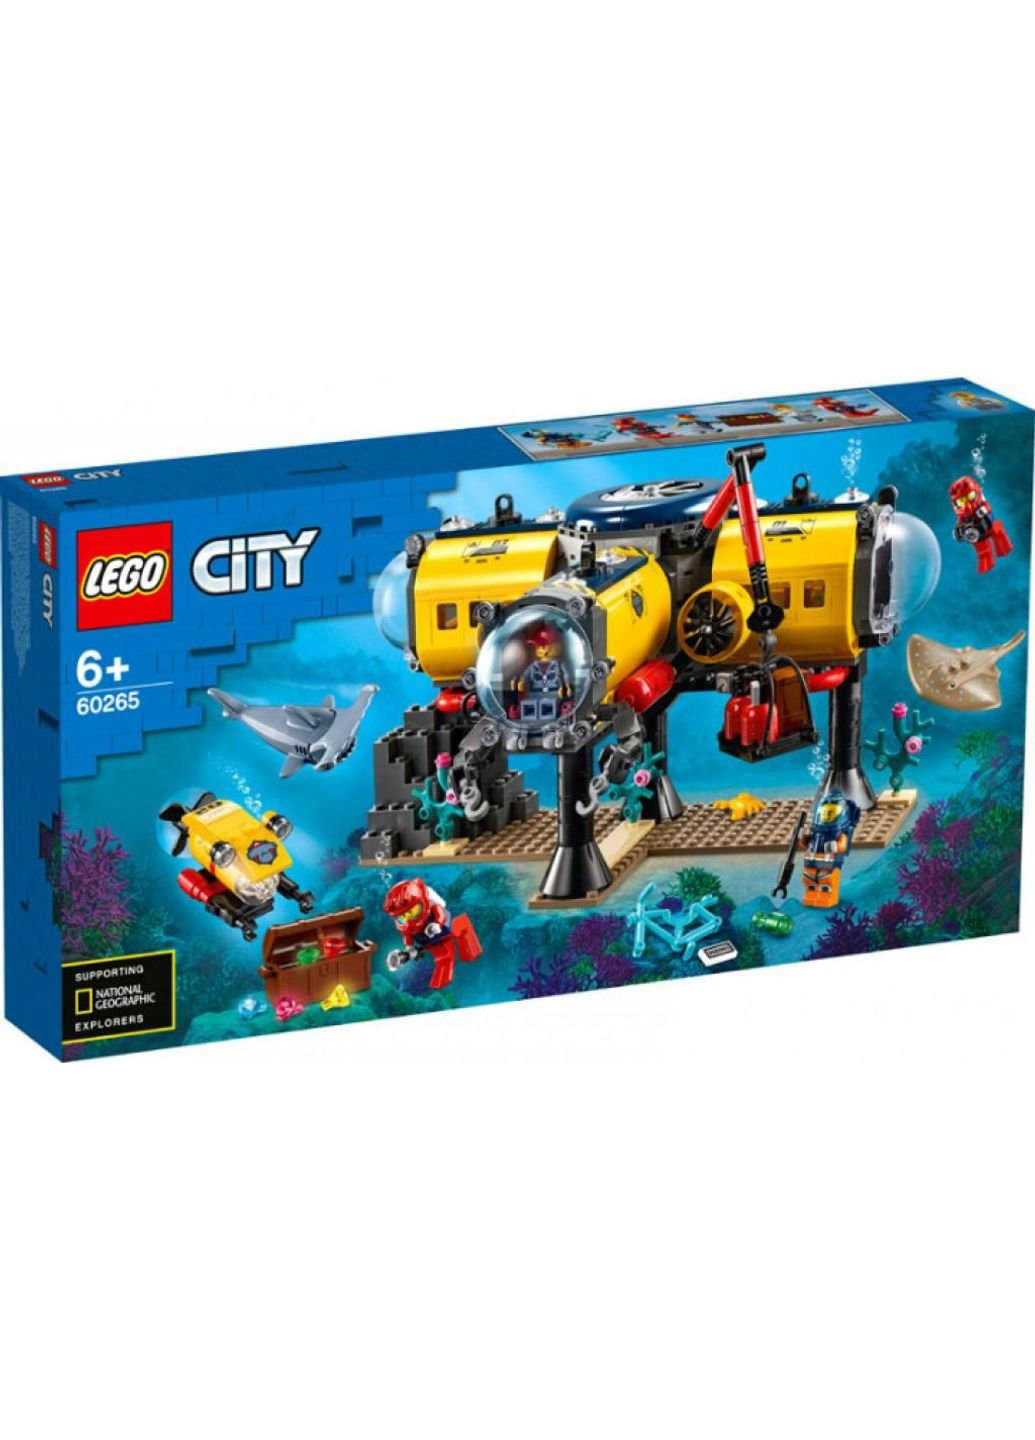 Конструктор (60265) Lego City Океан: исследовательская база 497 деталей  комбинированный ‣ Купить в интернет-магазине Каста ‣ Киев, Одесса, Харьков  ‣ Доставка по всей Украине! (#249599362)